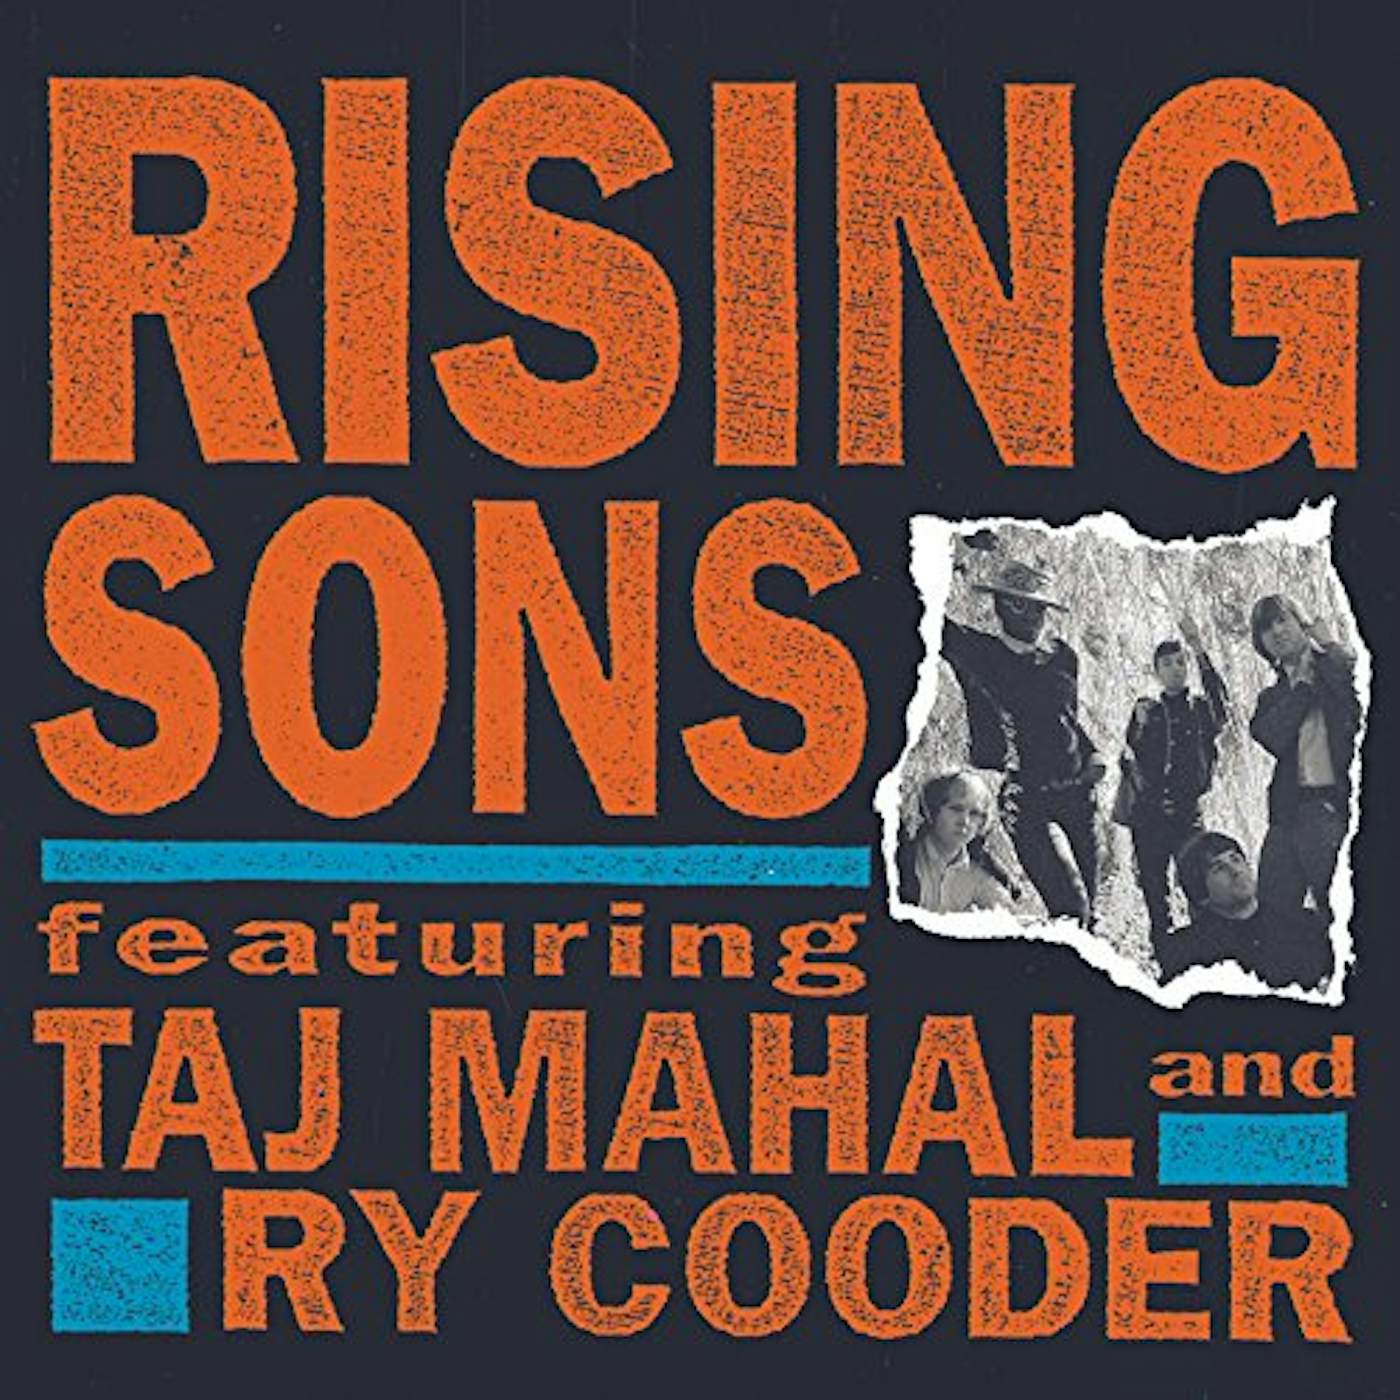 RISING SONS FEAT TAJ MAHAL CD